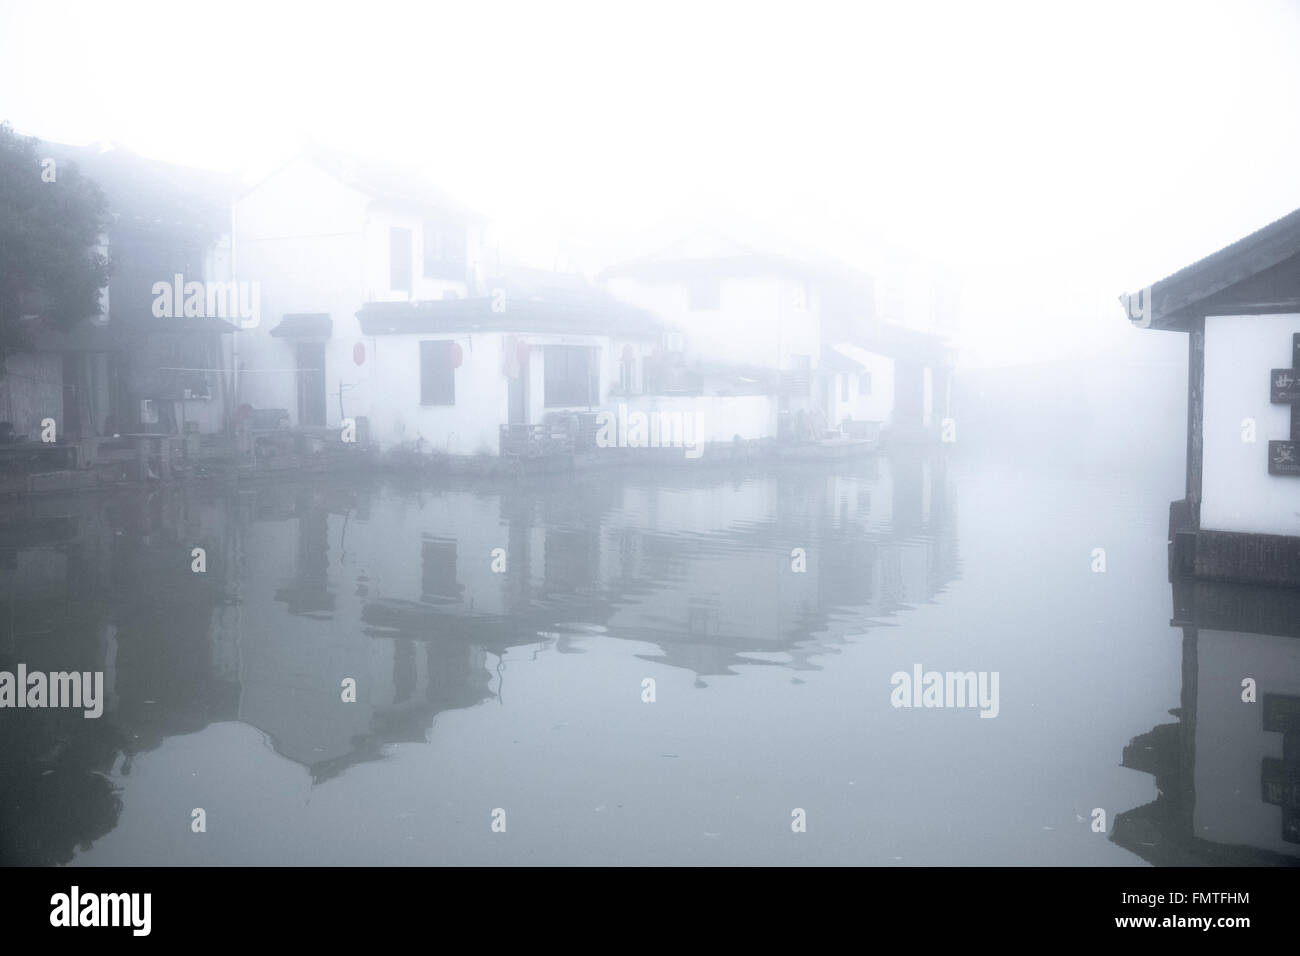 Wie chinesische undurchsichtige Aquarell, kleine Häusern im Wasser stehen. Dichter Nebel macht die Stadt zu Traum, ein Traum in weiß. Stockfoto